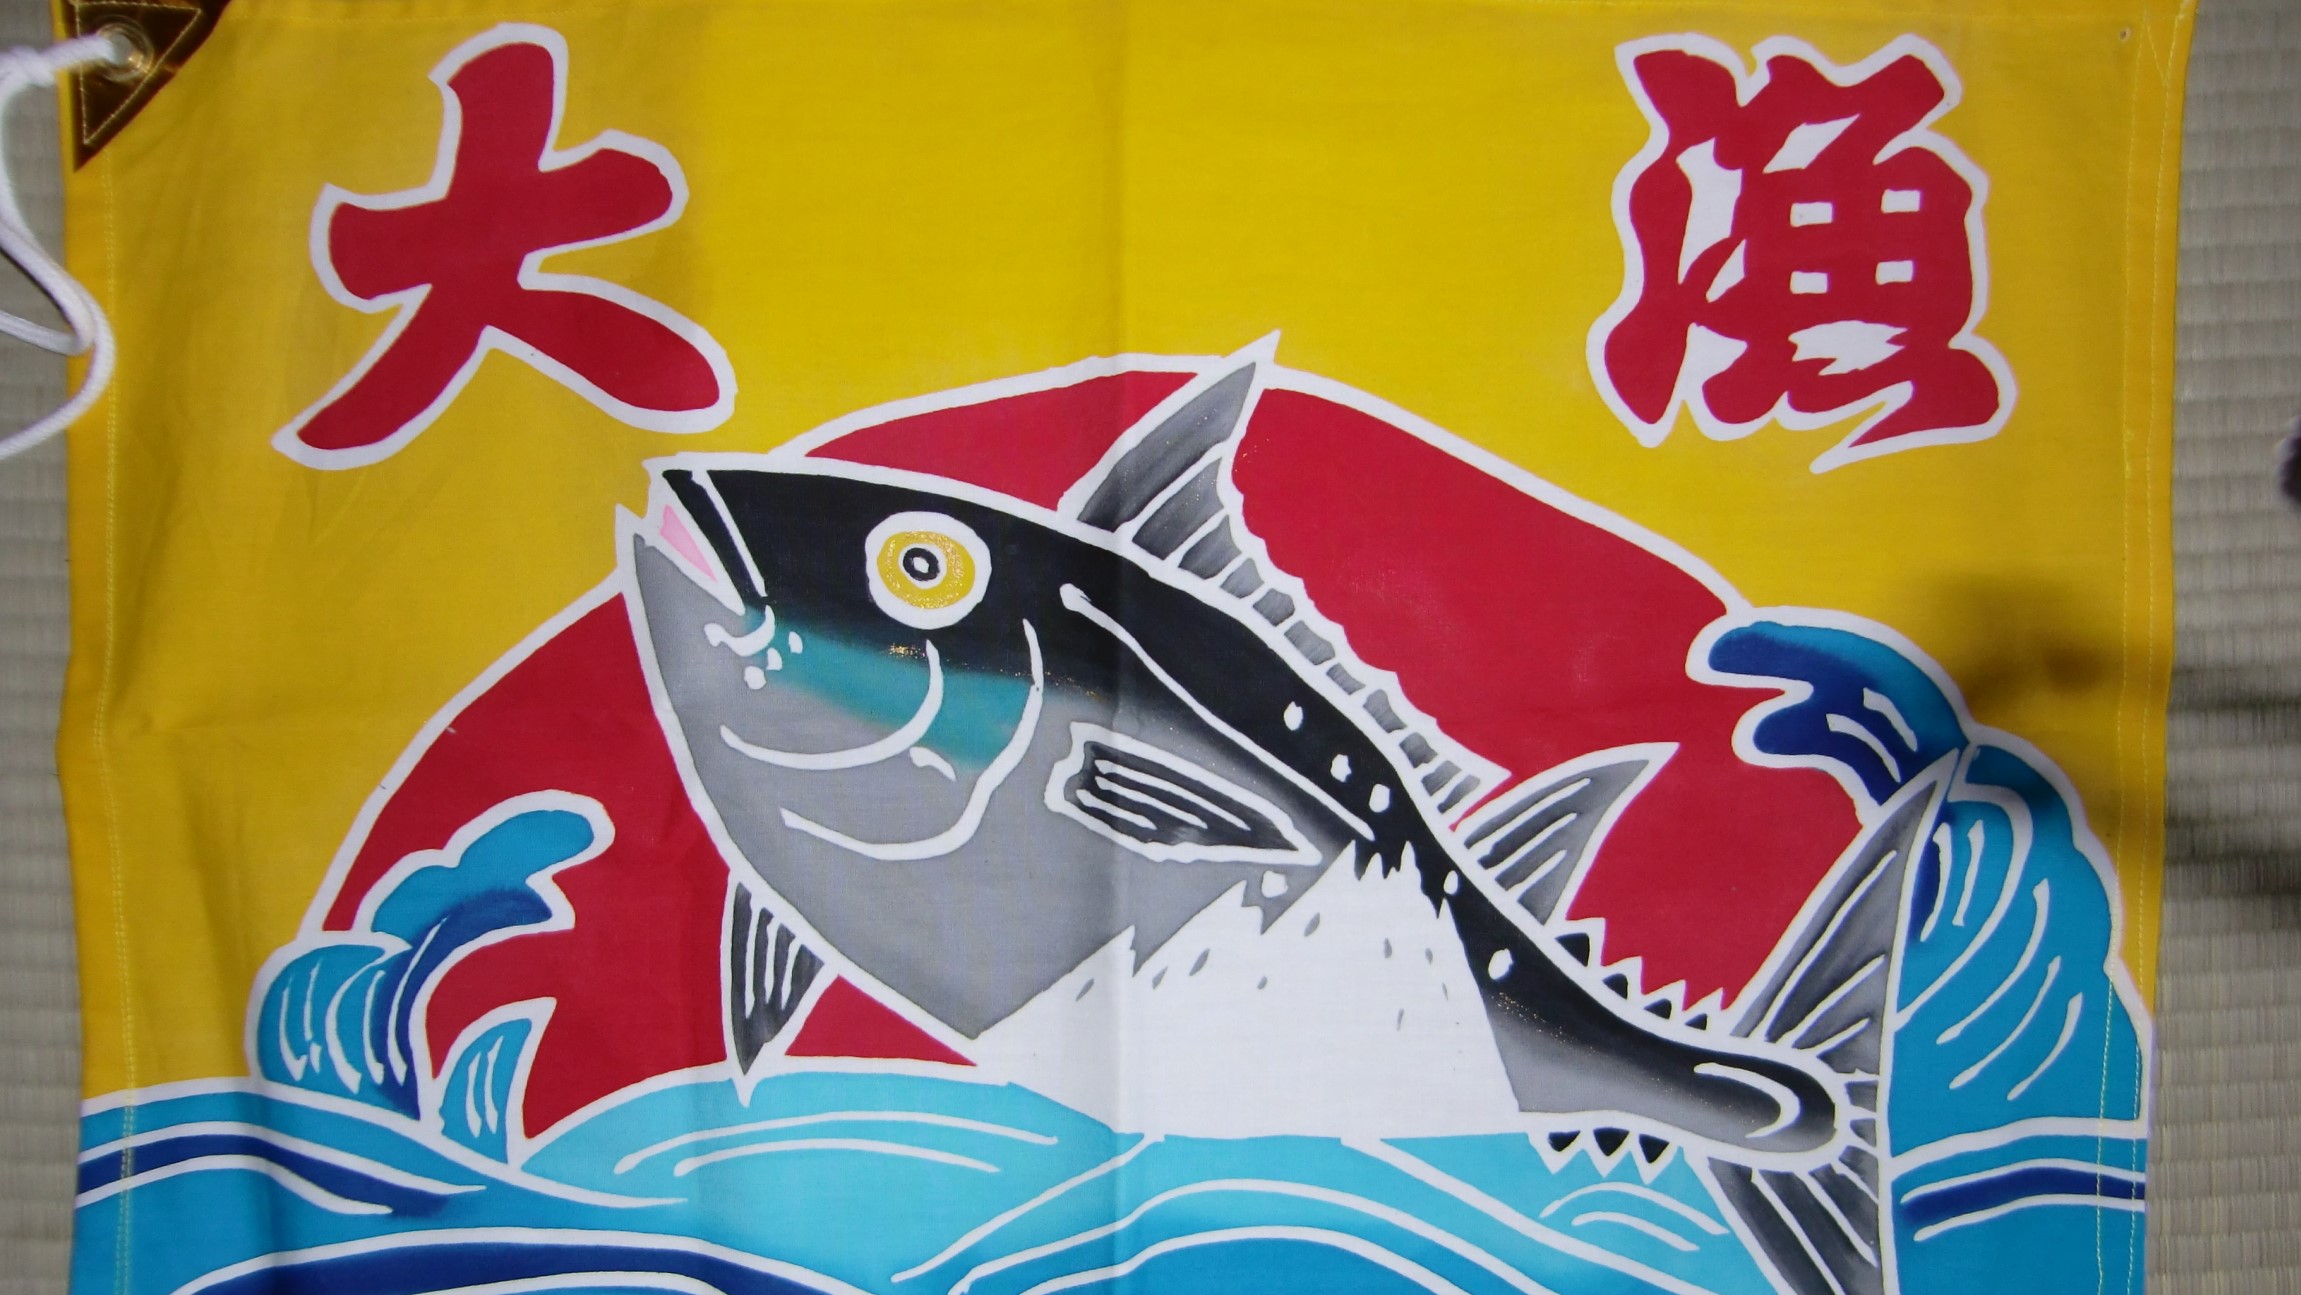 オリジナルの大漁旗を作ってみよう 三浦半島で大漁旗染め体験 三浦cocoon 三浦半島からのあたらしいすごしかた提案